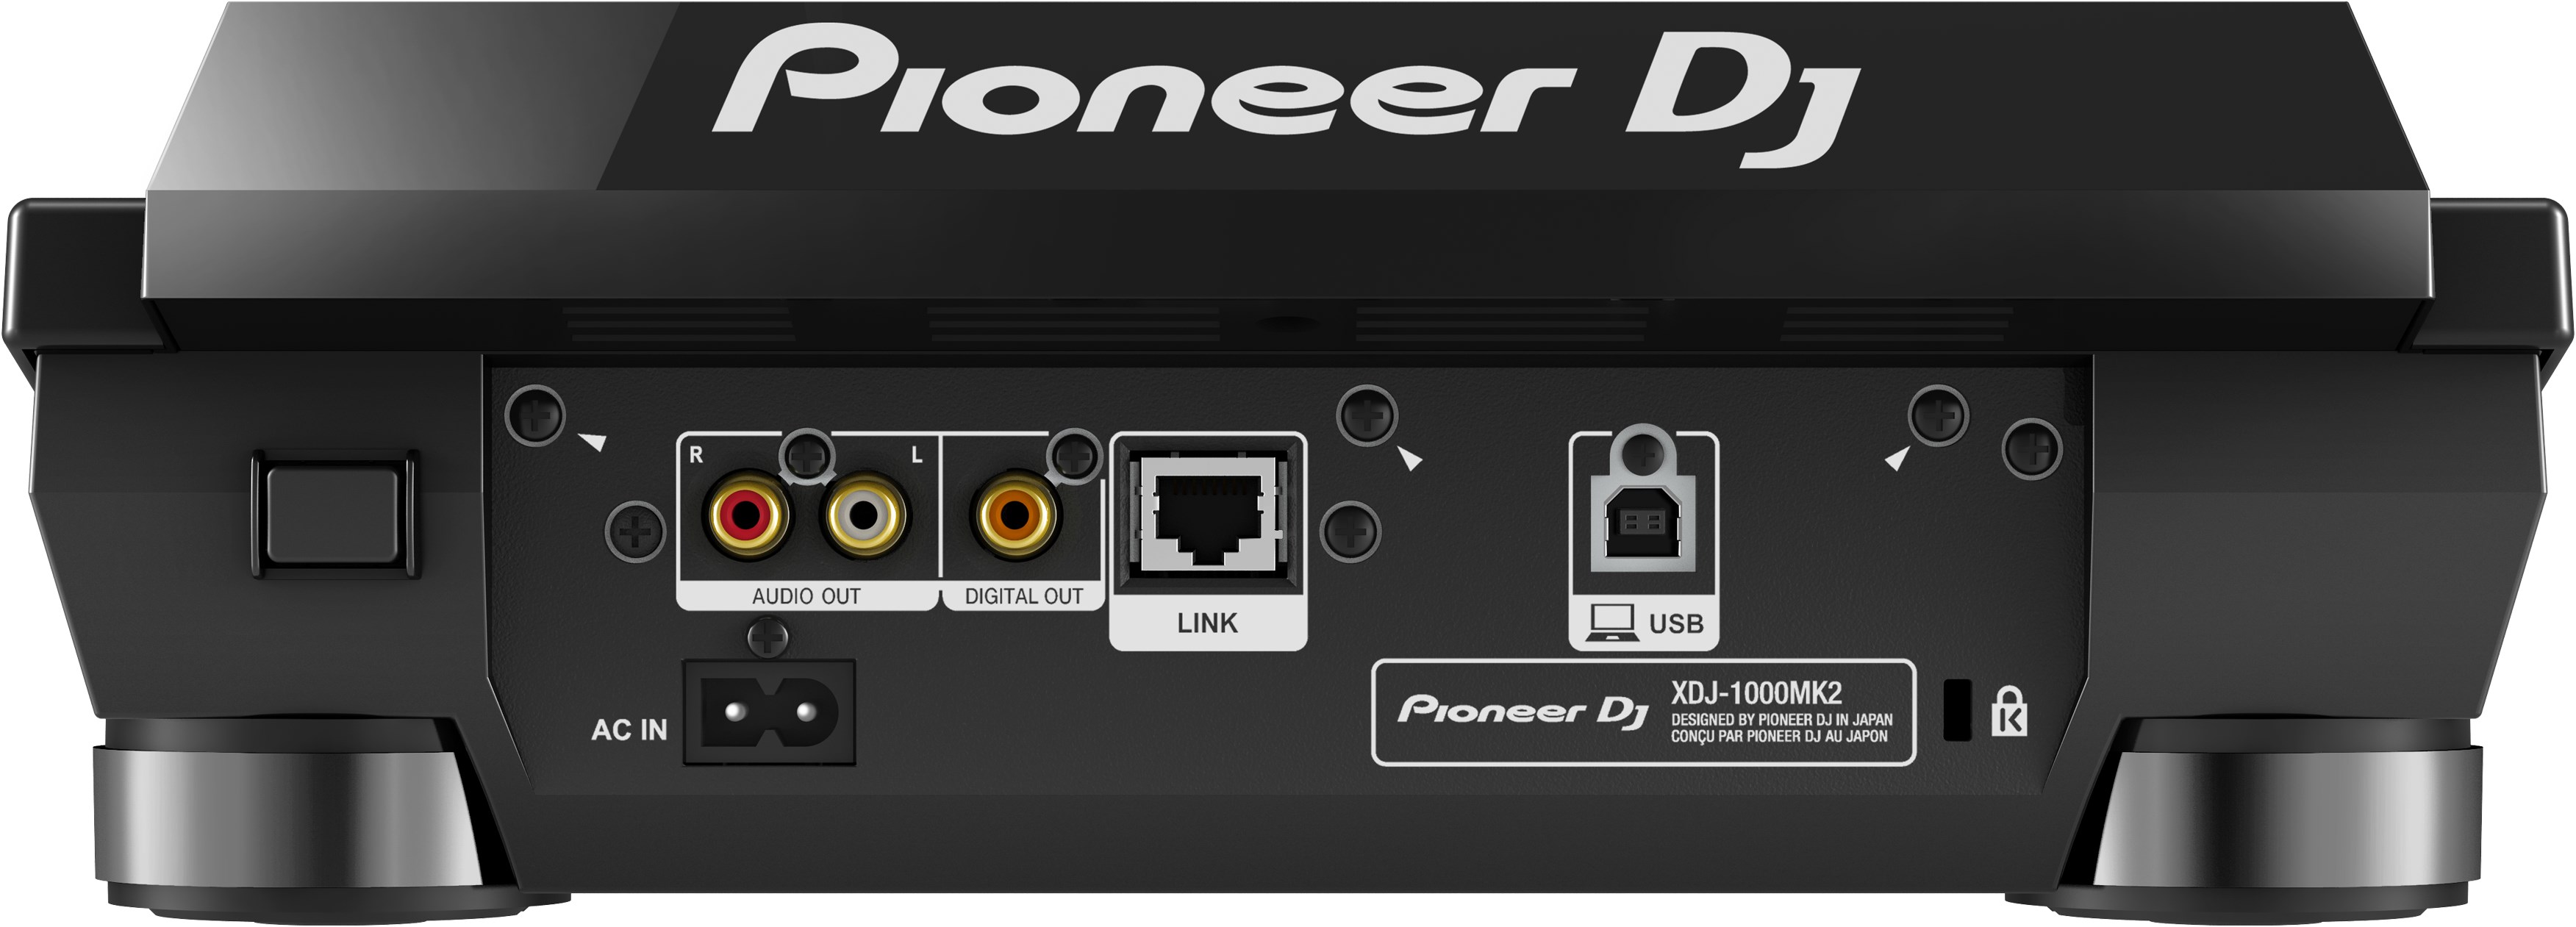 Pioneer Dj Xdj-1000mk2 - MP3 & CD Plattenspieler - Variation 2